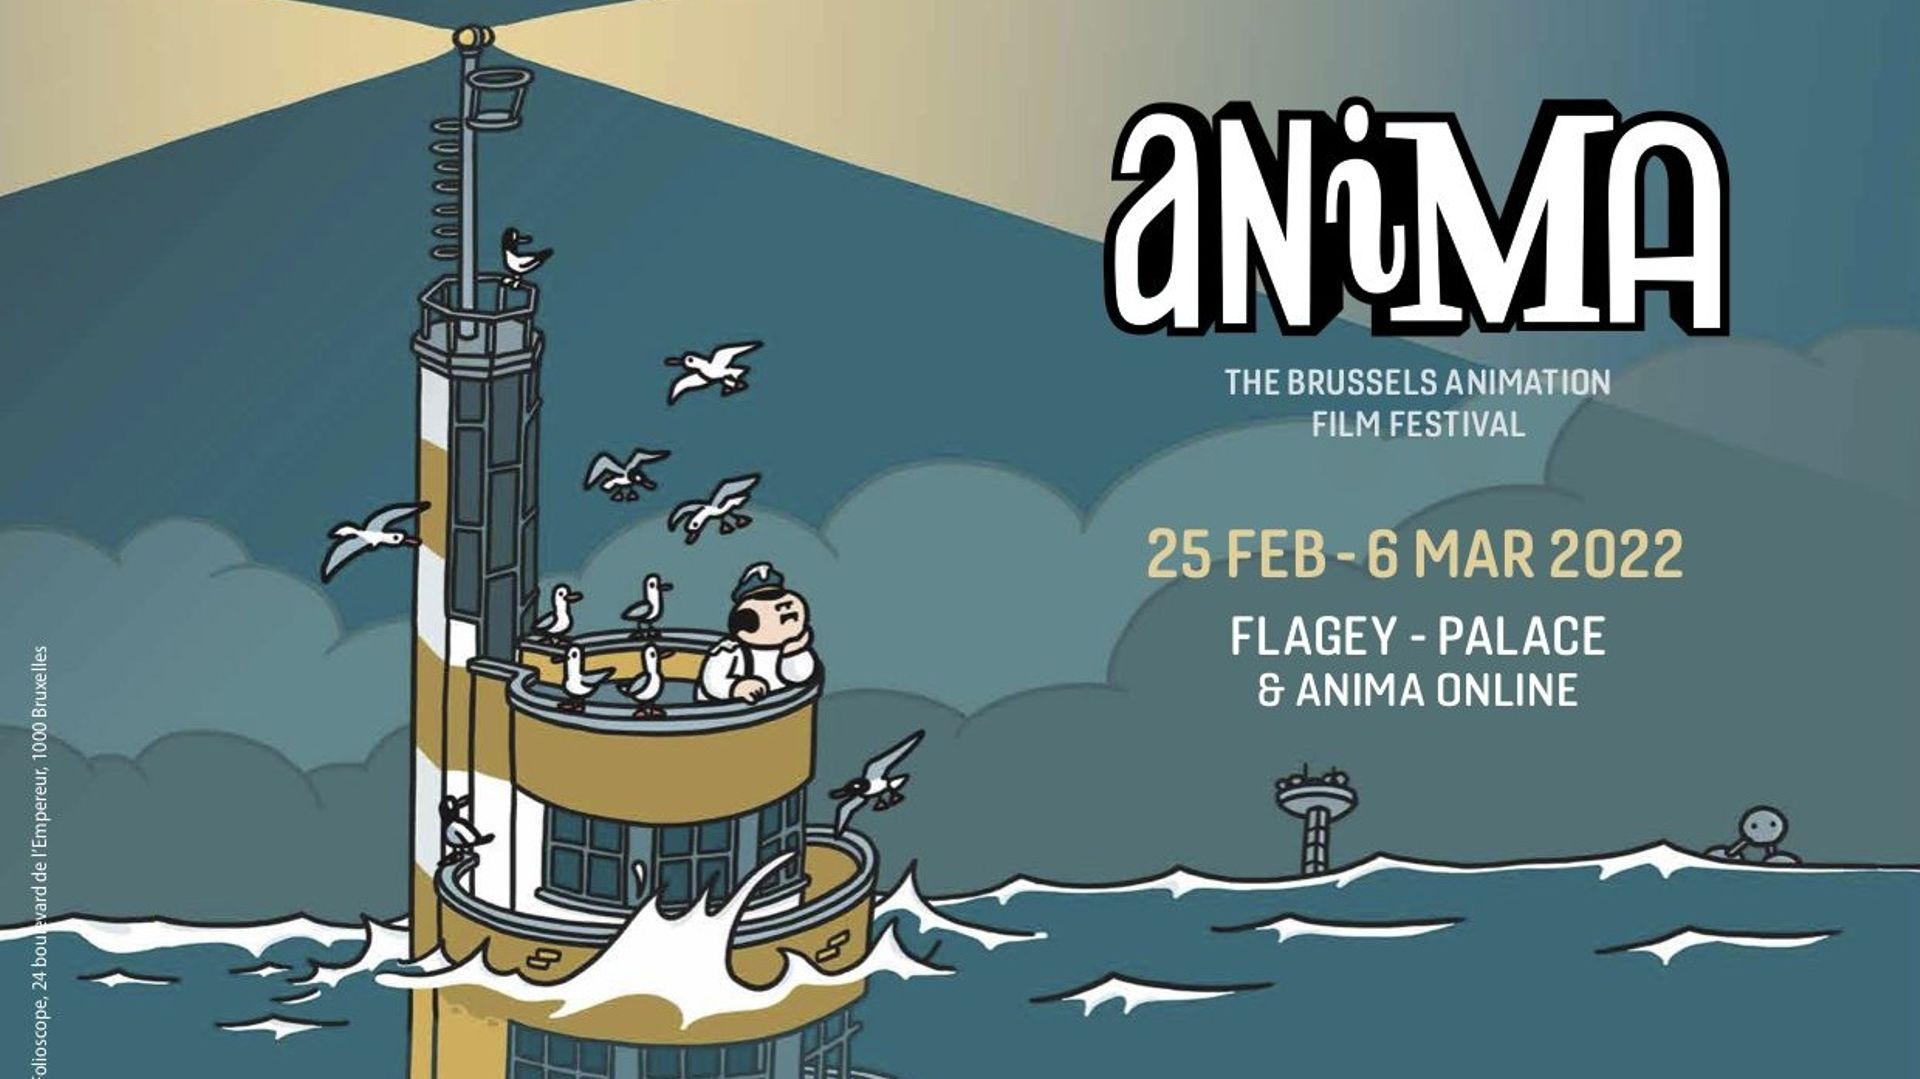 Après une 40e édition entièrement en ligne en 2021, le festival du film d’animation Anima maintiendra sa plateforme virtuelle Anima Online, mais reprendra partiellement ses quartiers à Flagey à Ixelles du 25 février au 6 mars.